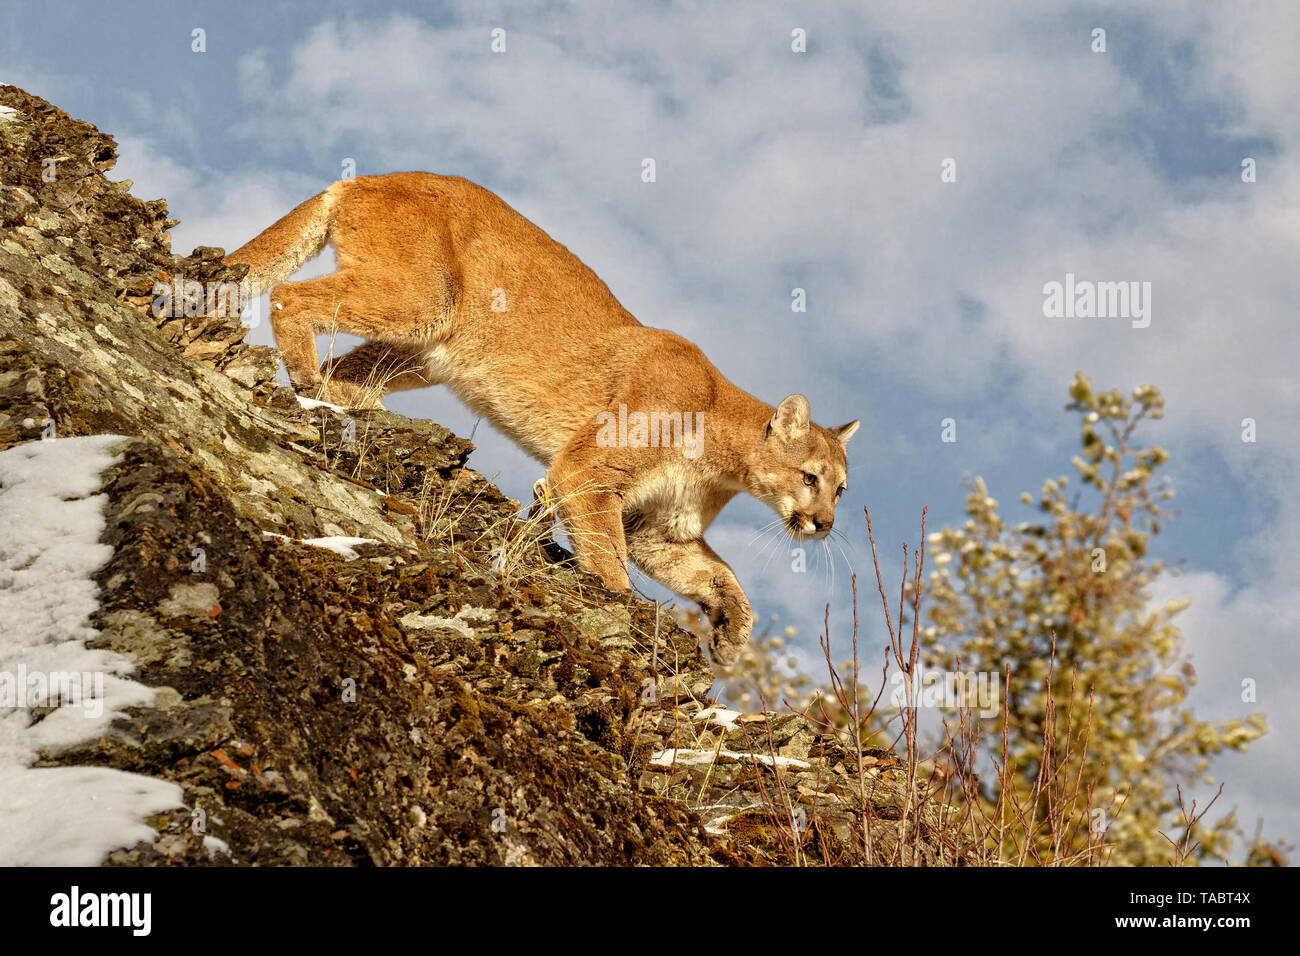 Die Cougar hat viele Namen einschließlich Mountain Lion, Puma, Panther oder Catamount, ist eine große Katze, die in Nord- und Südamerika. Stockfoto